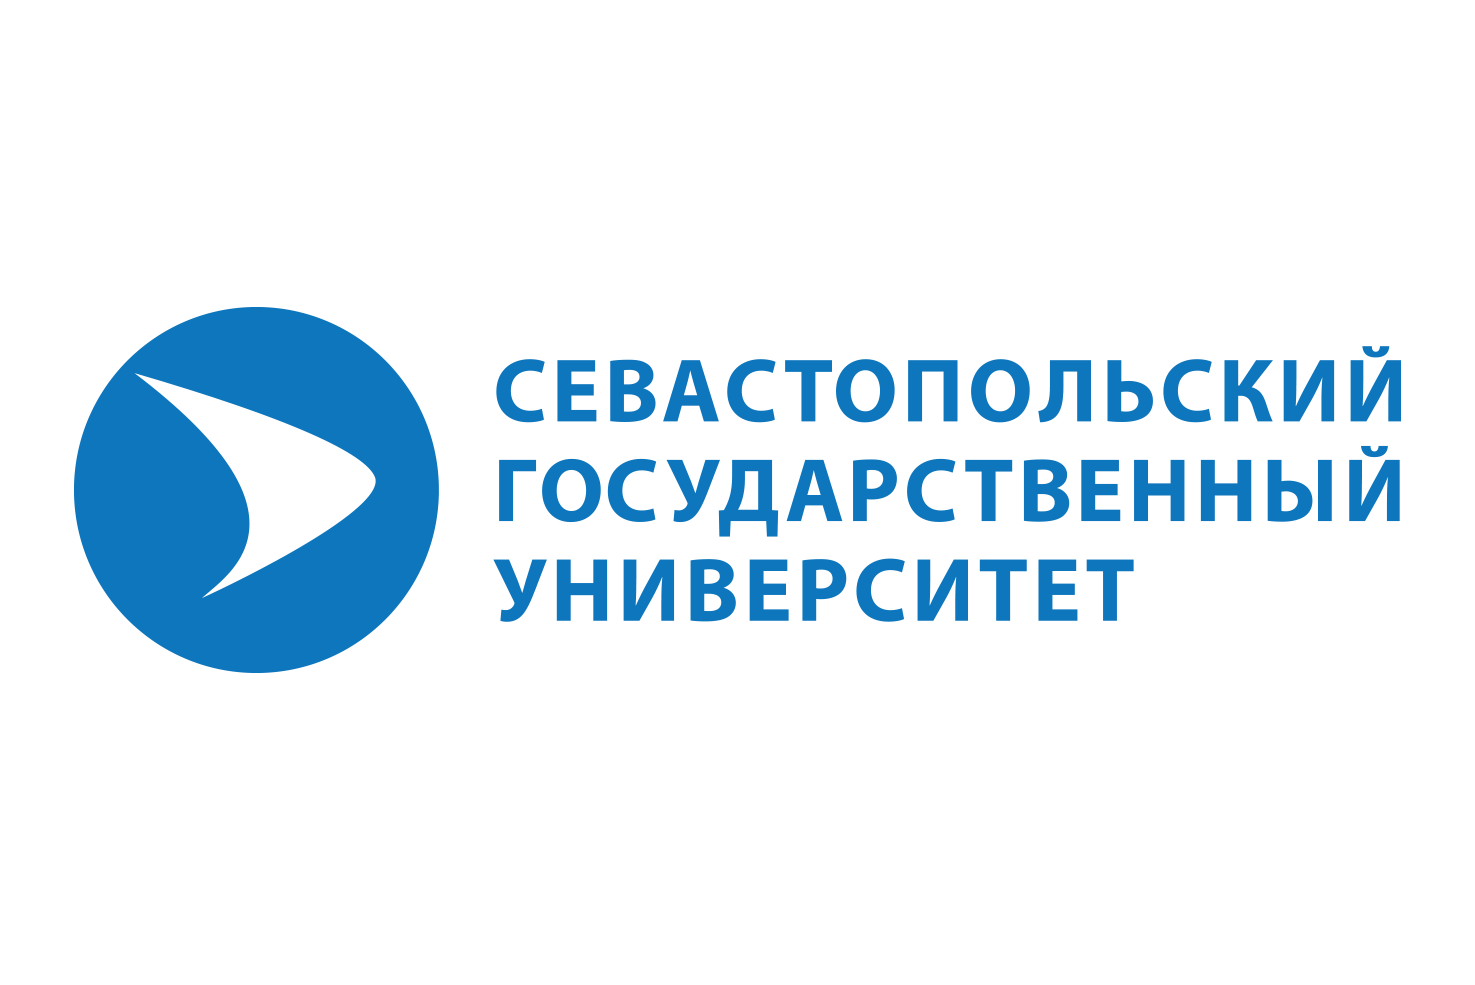 Севастопольский государственный университет эмблема